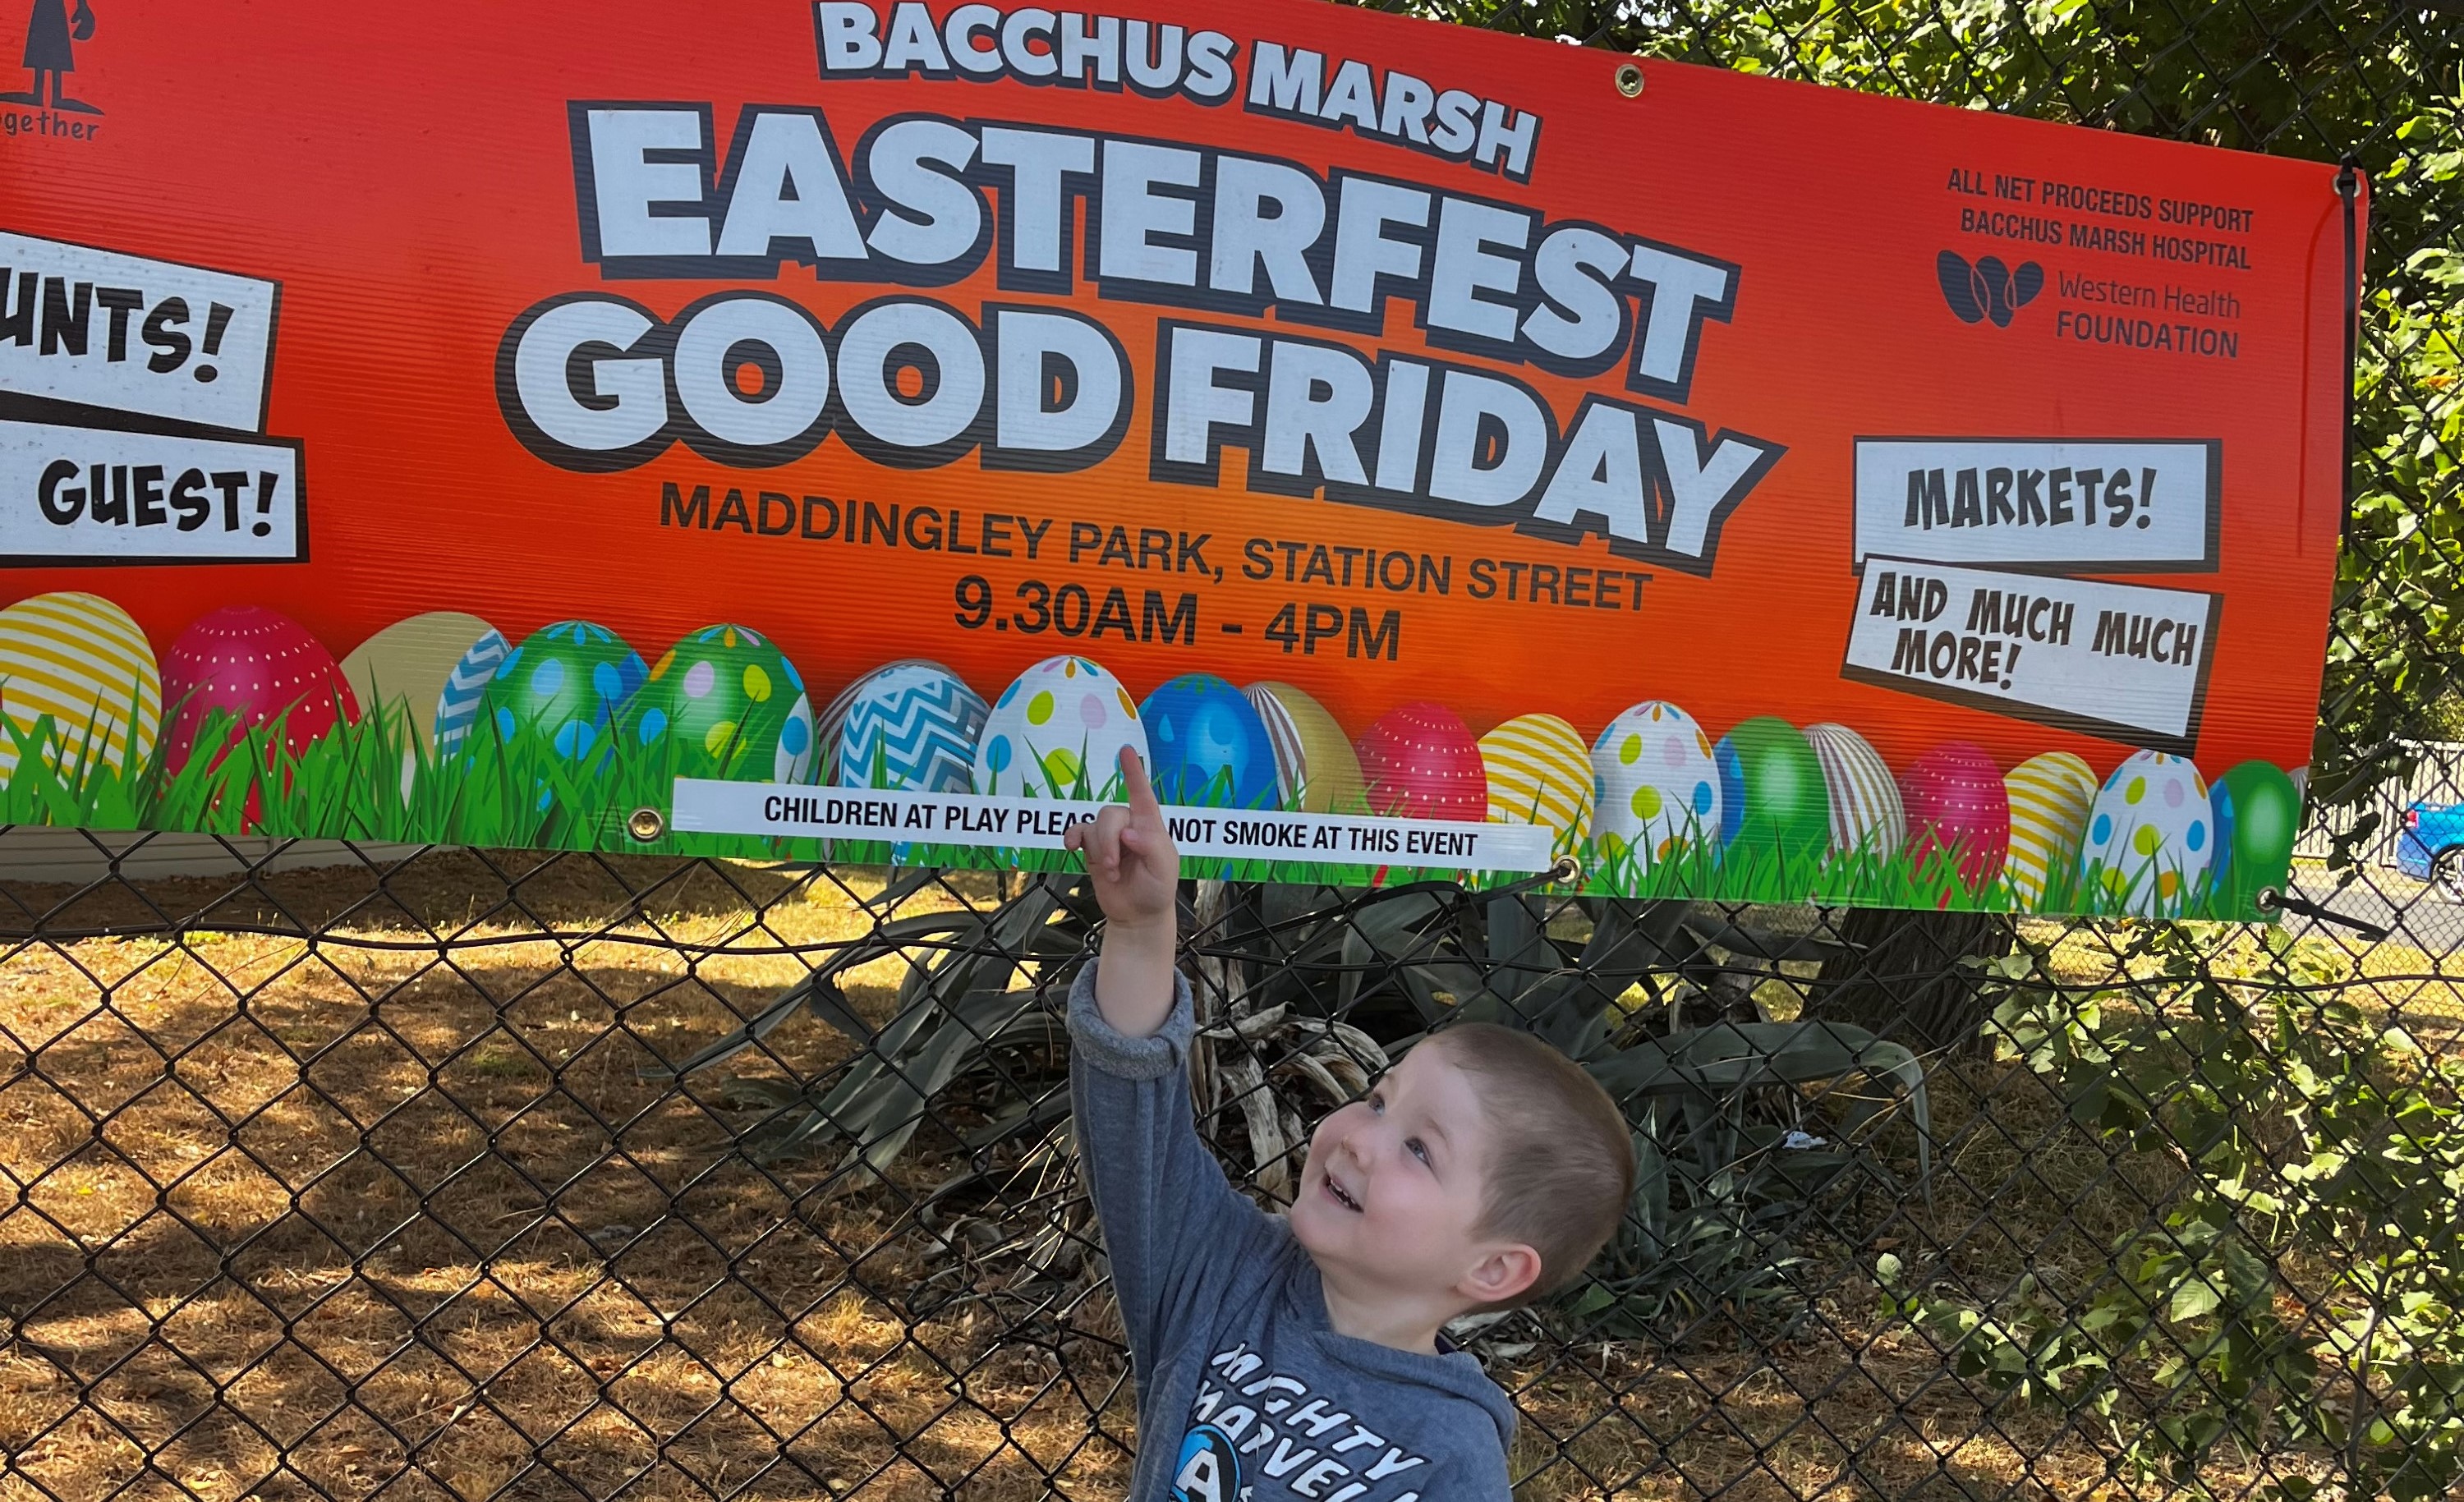 Bacchus Marsh EasterFest